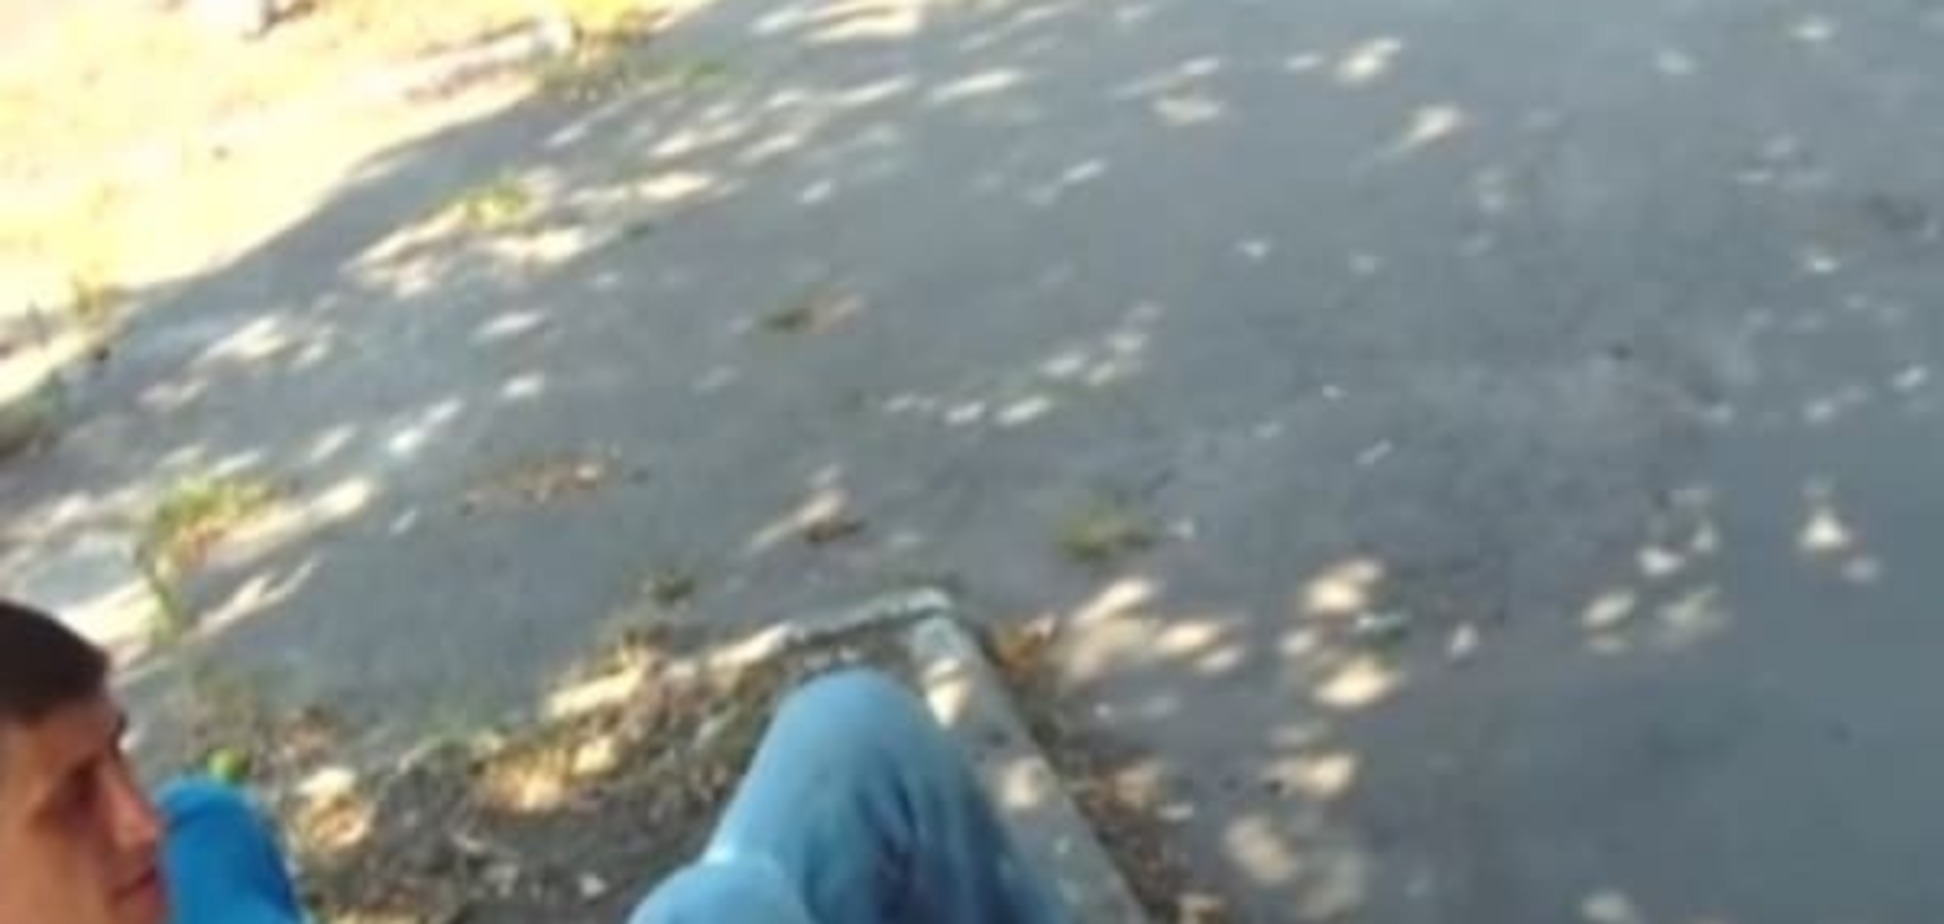 У Києві дебошир зі школи вдарив поліцейського